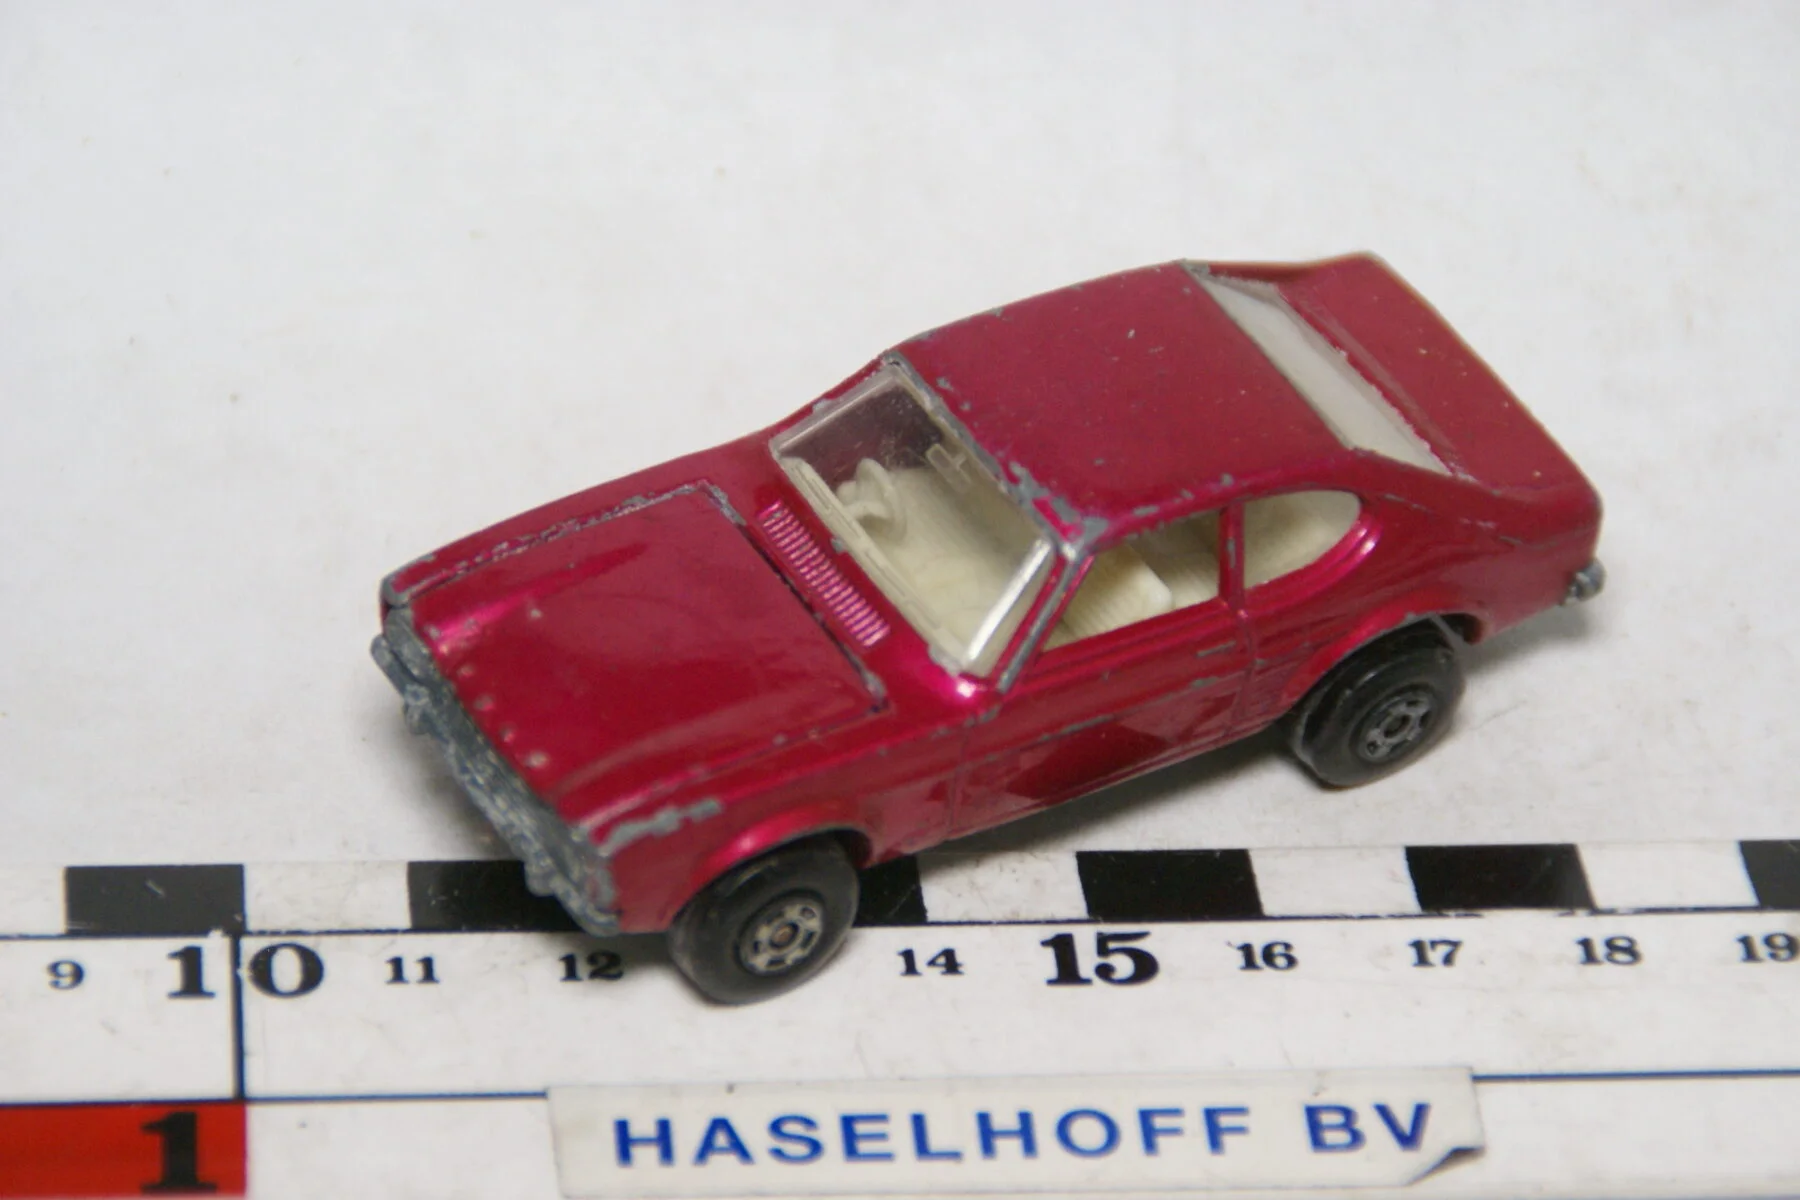 DSC07882 miniatuur 1970 Ford Capri rood ca 1op70 Matcbox nr 54